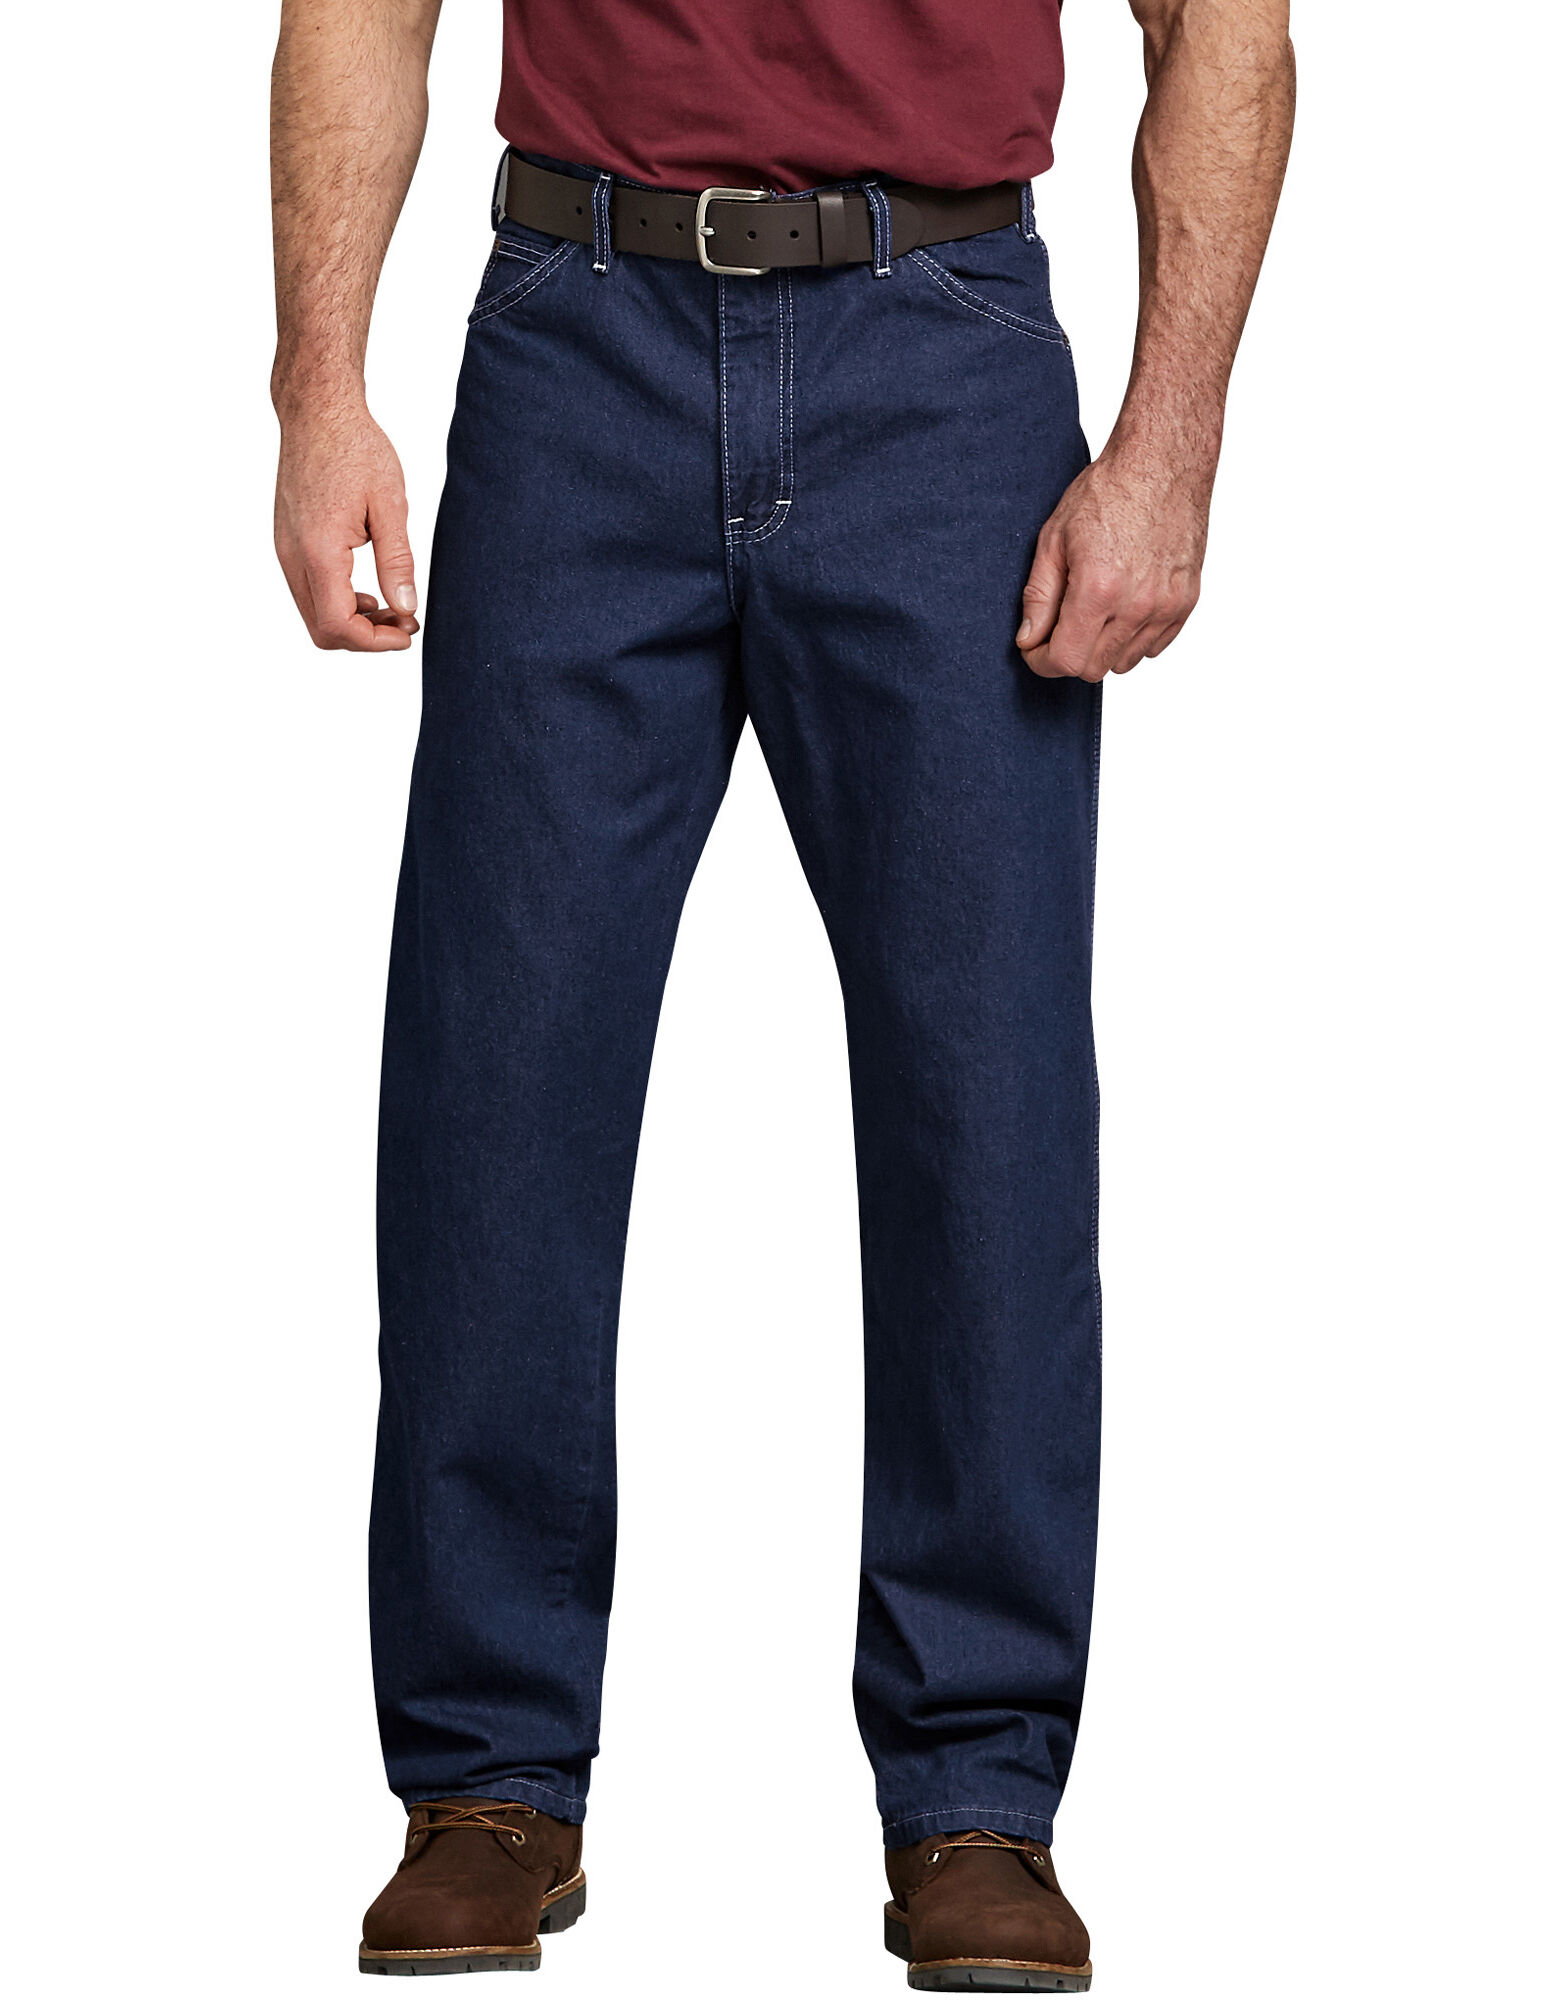 dickies 1994 carpenter jeans